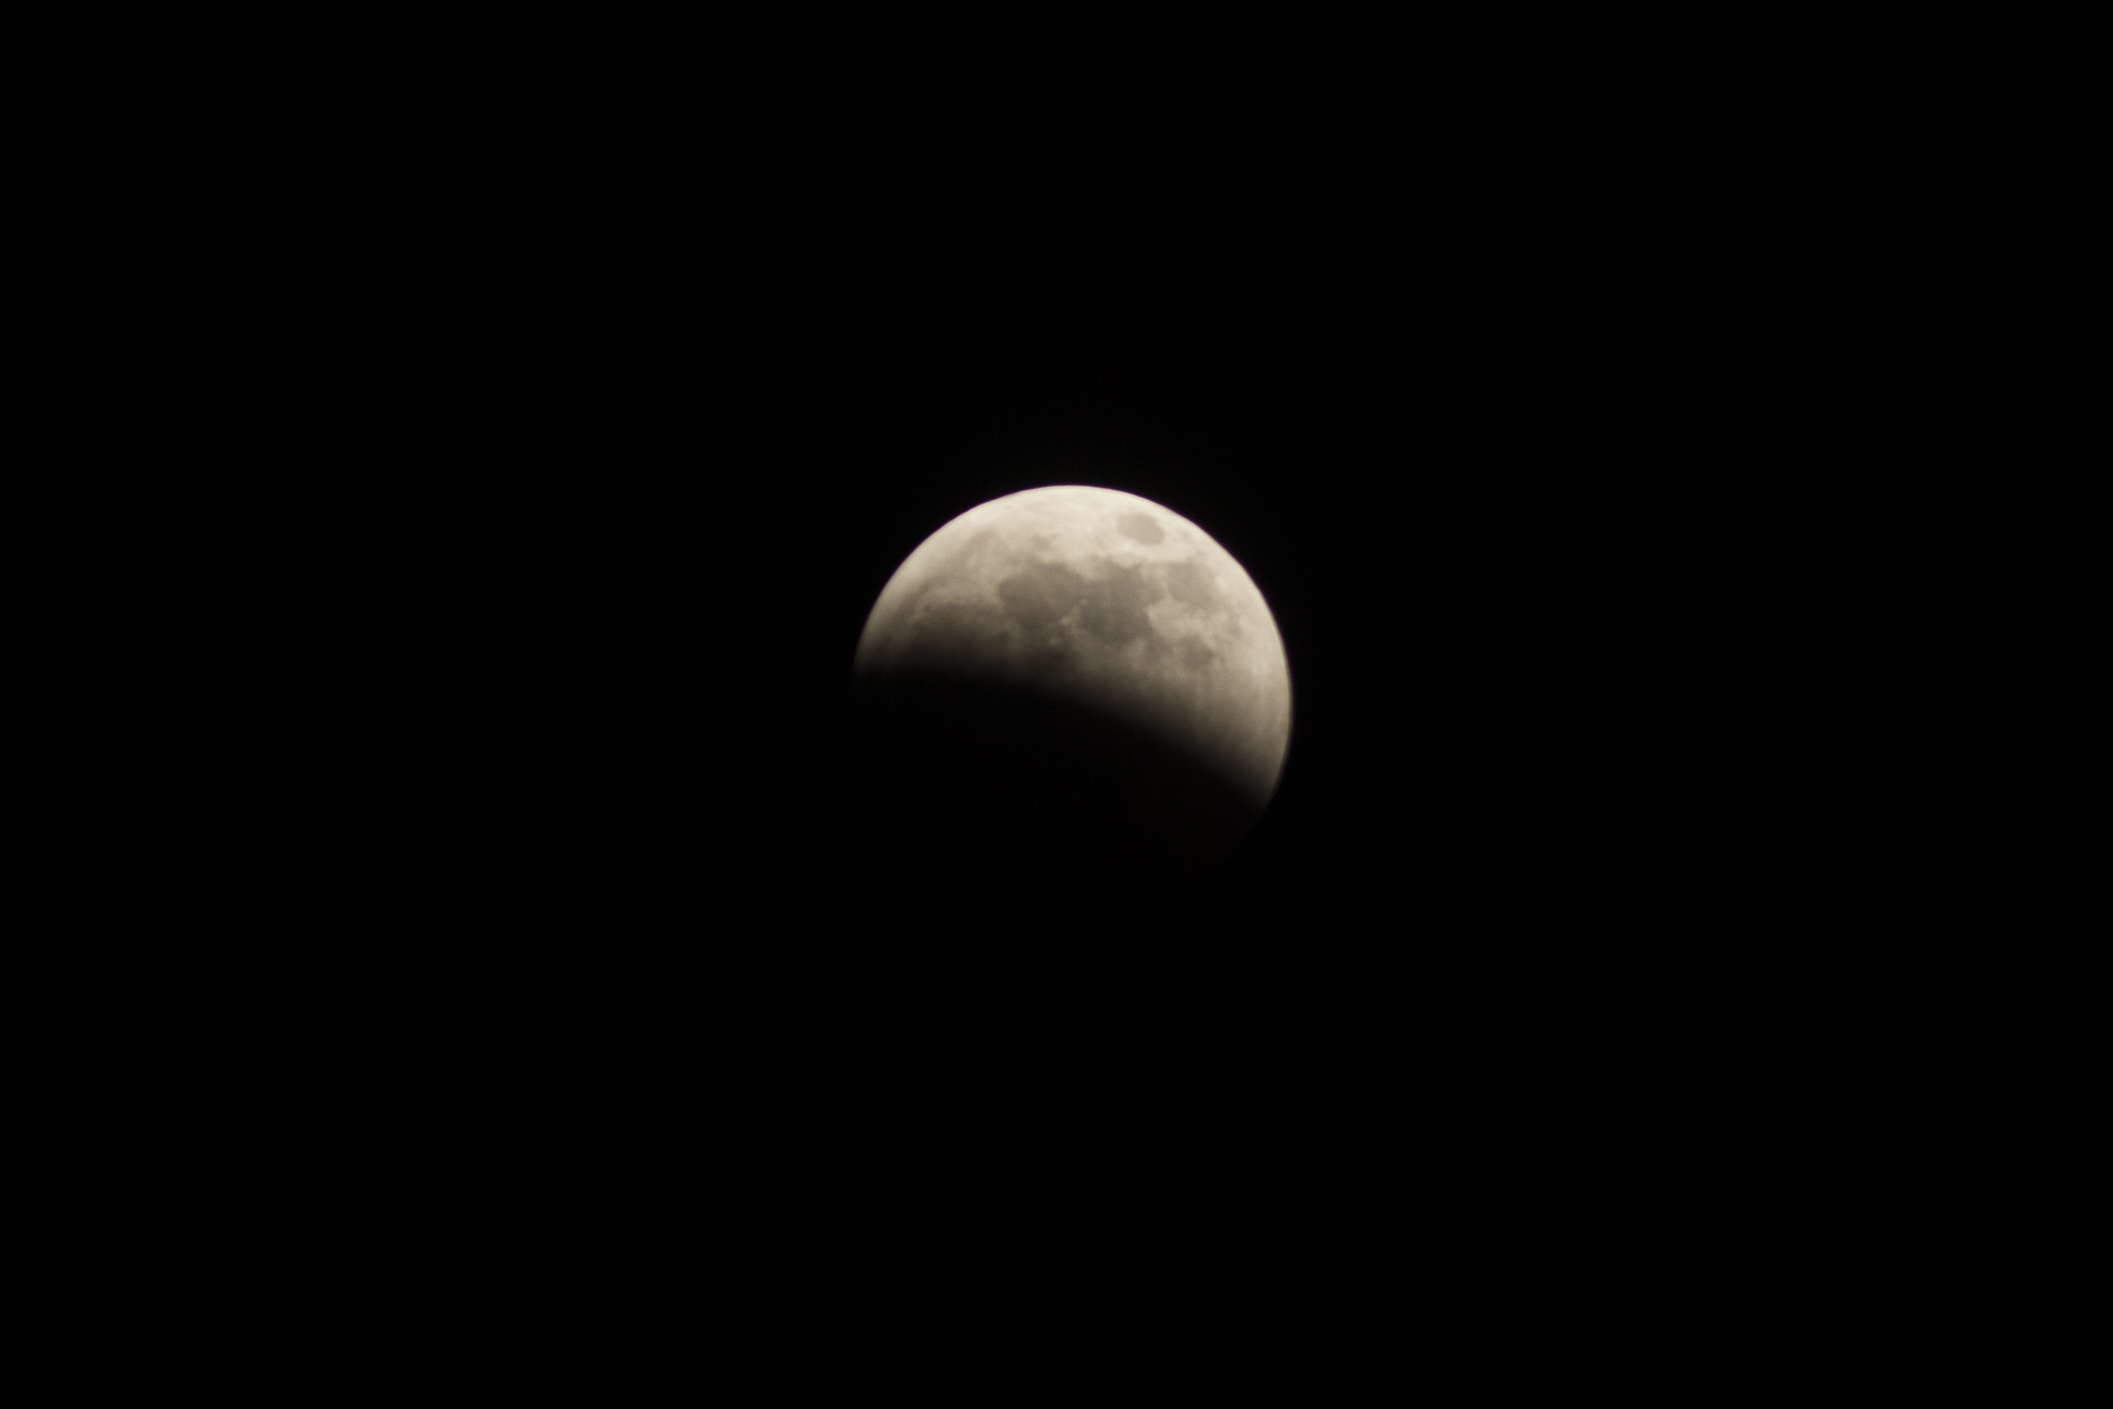 Partial lunar eclipse - midway